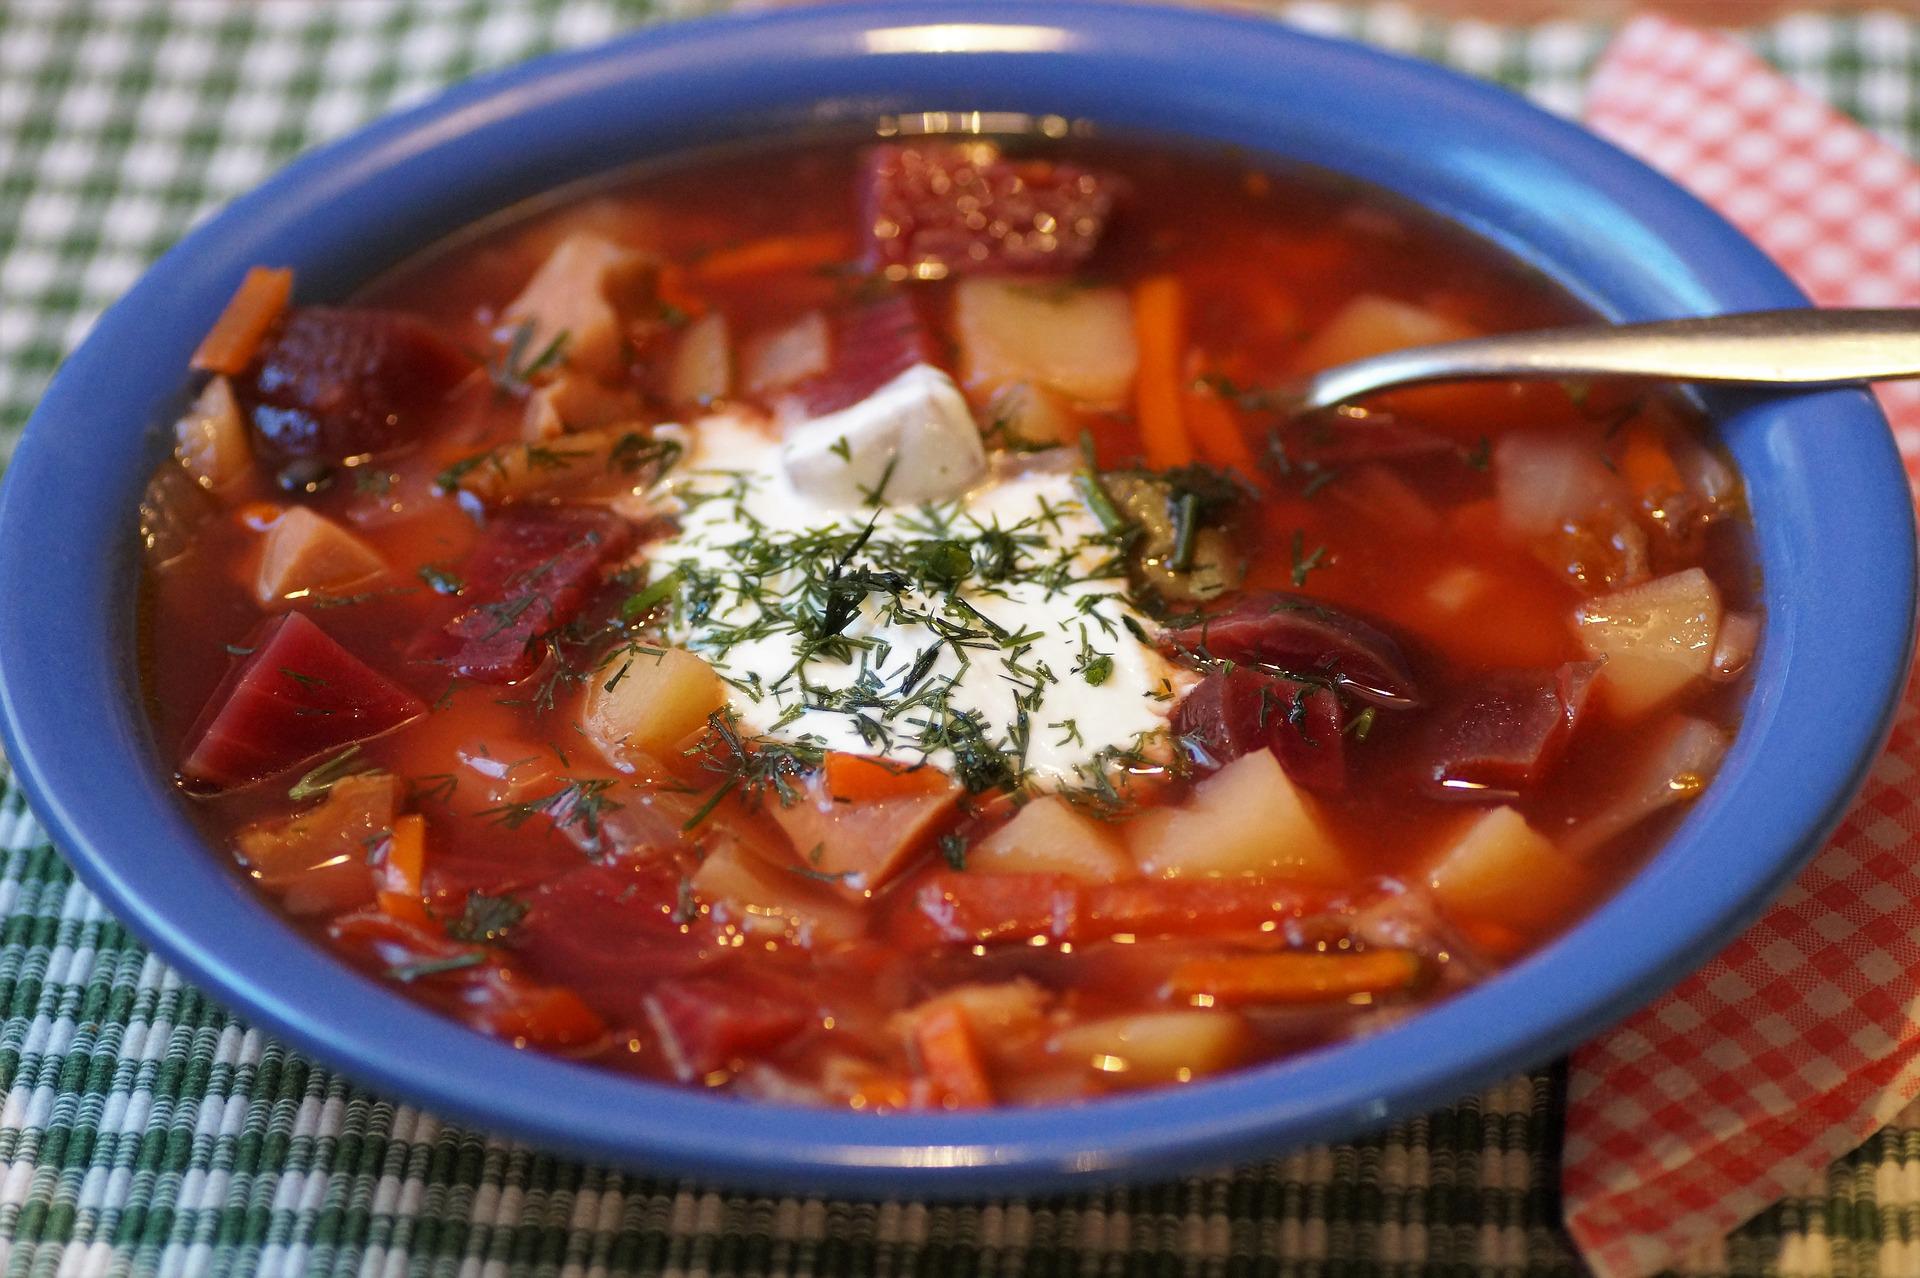 Ukraina klaim kemenangan atas Rusia dalam sektor makanan nasionalnya yaitu sup borsch.